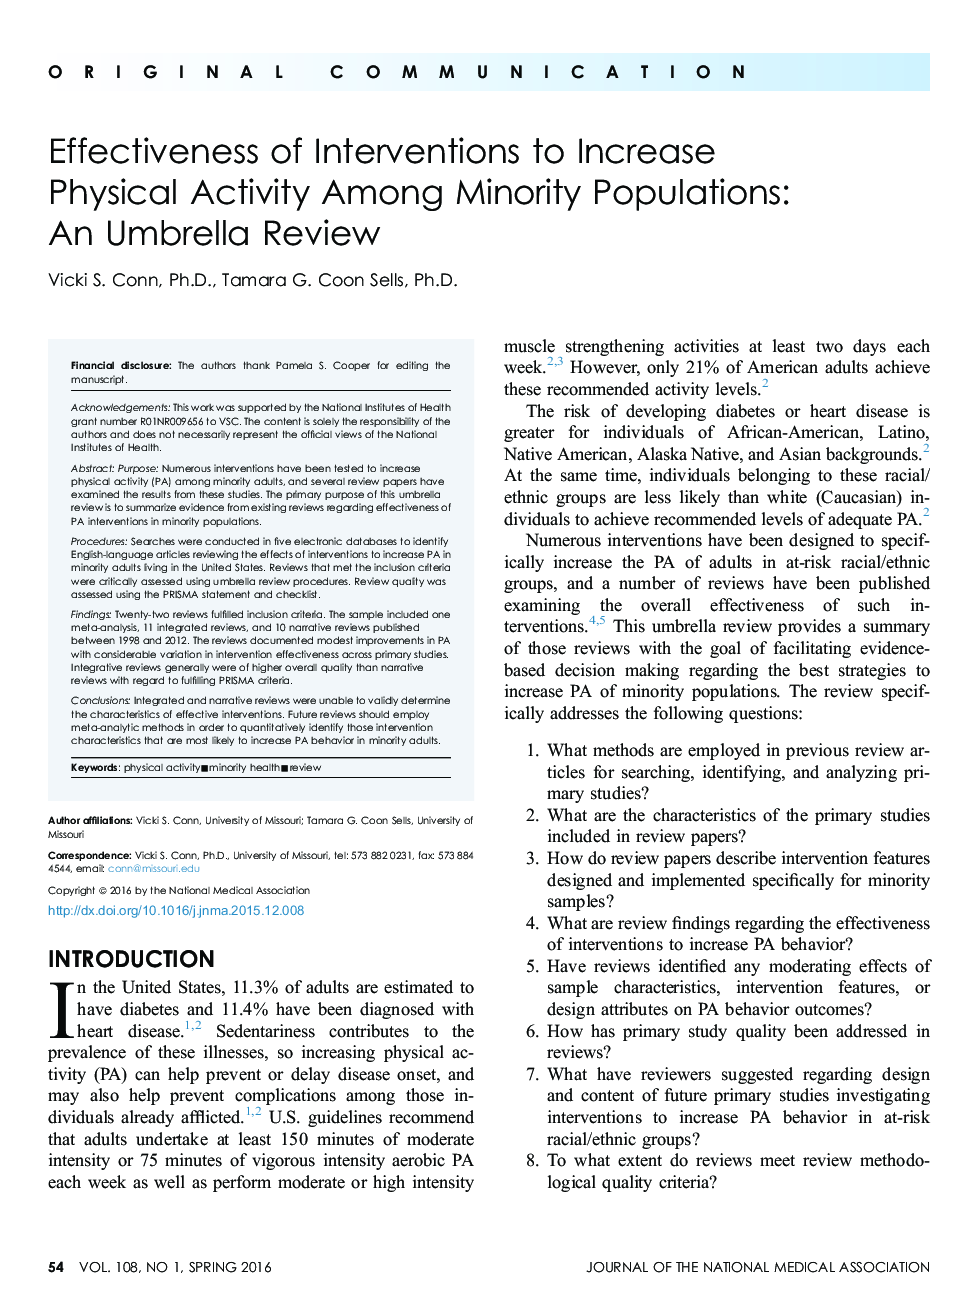 اثربخشی مداخلات برای افزایش فعالیت بدنی در میان جمعیت اقلیت : نقد و بررسی چتر